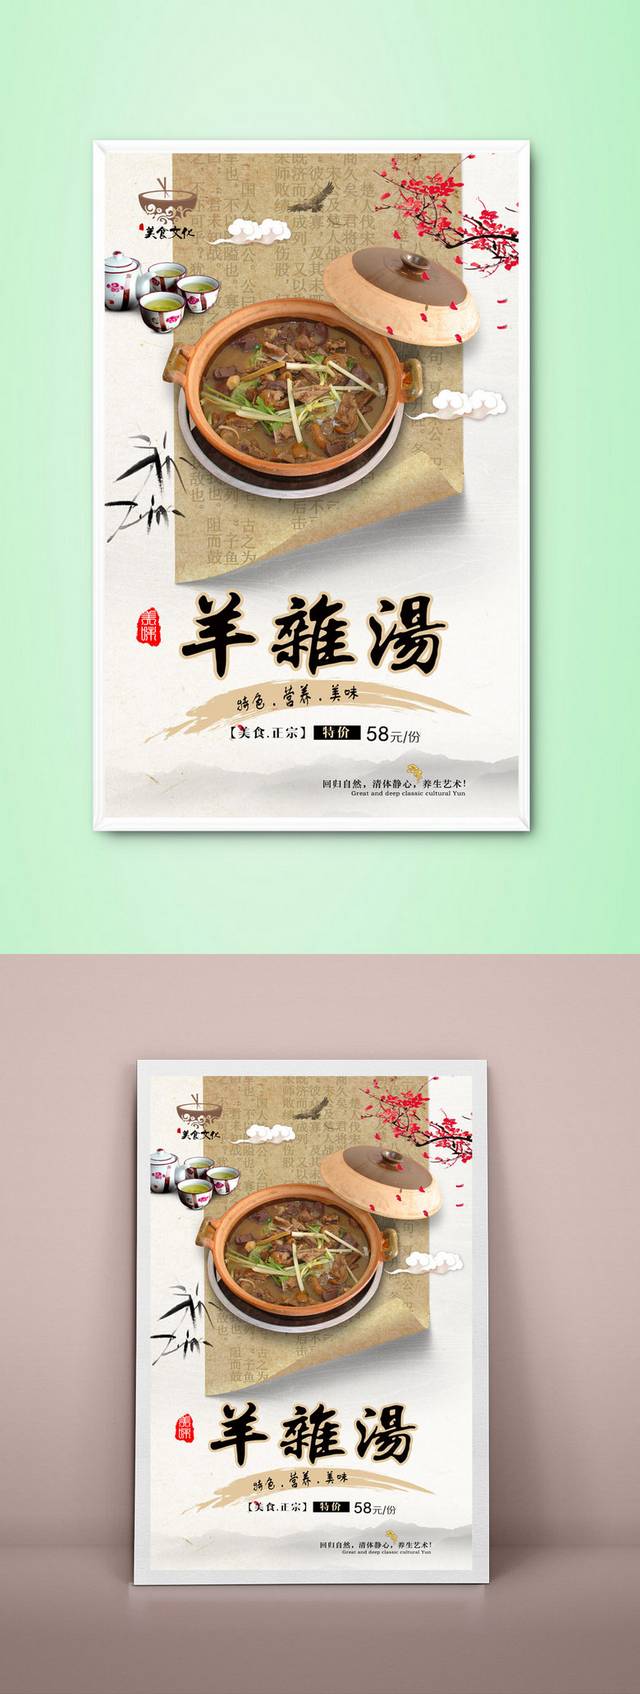 中国风羊杂汤宣传海报设计模板